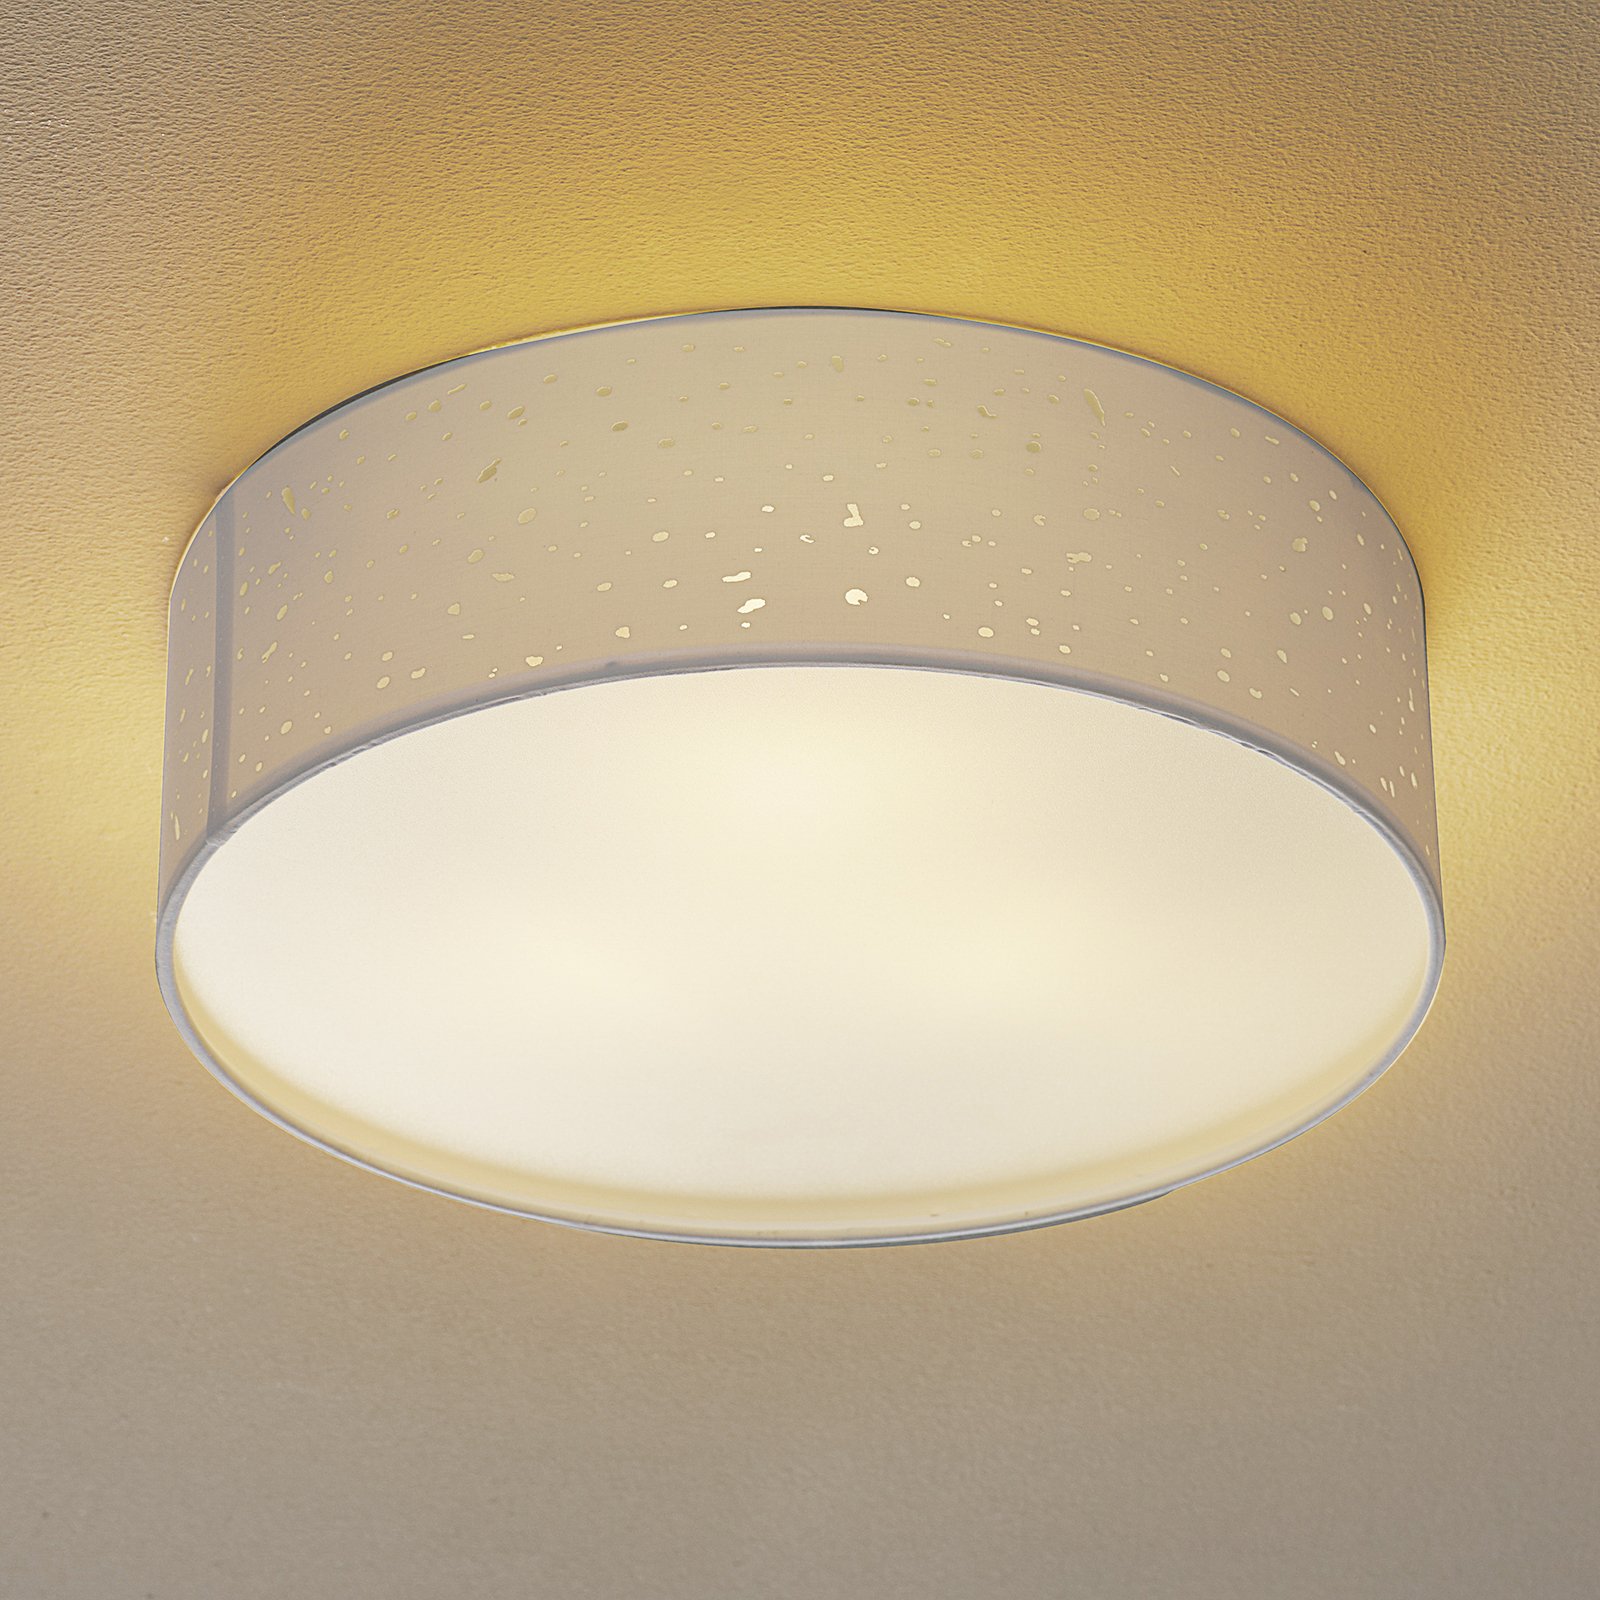 Thor ceiling light, Ø 40 cm, white